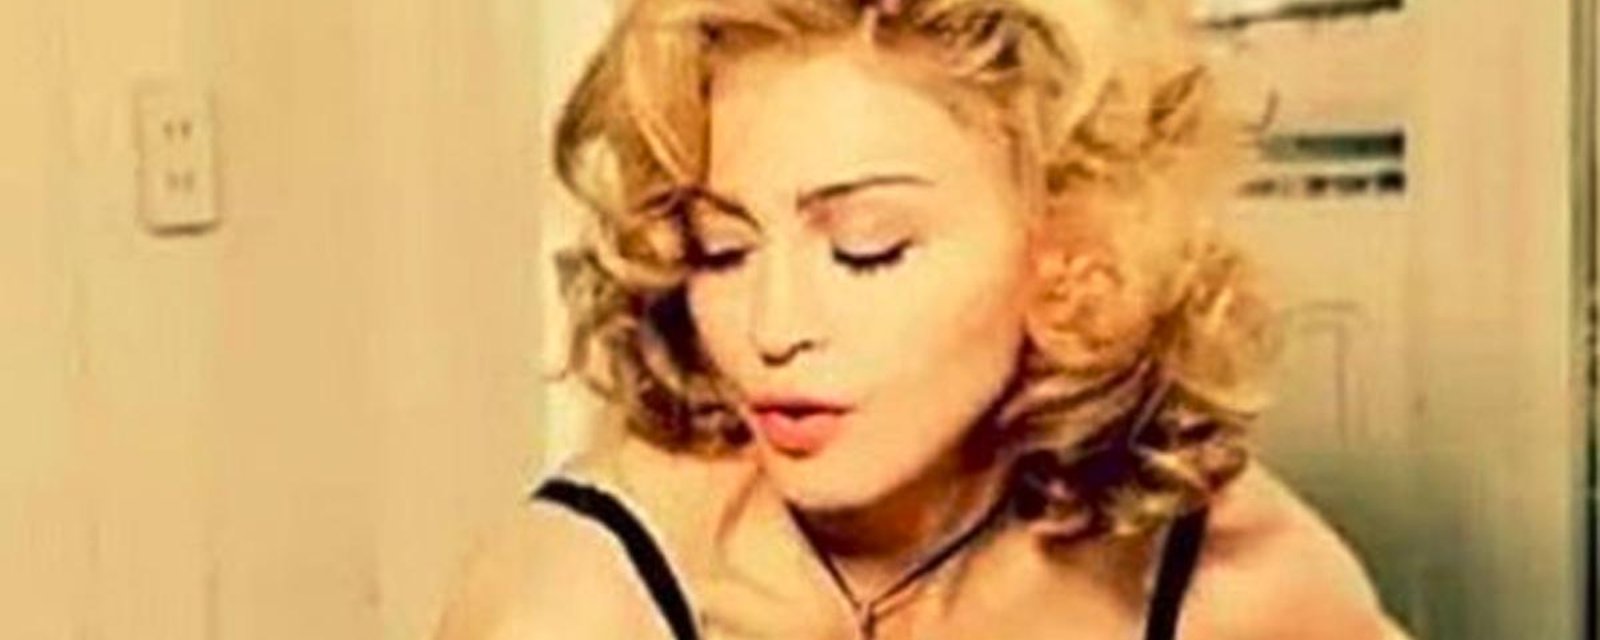 Madonna offre de faire une fellation en échange d'un simple geste...